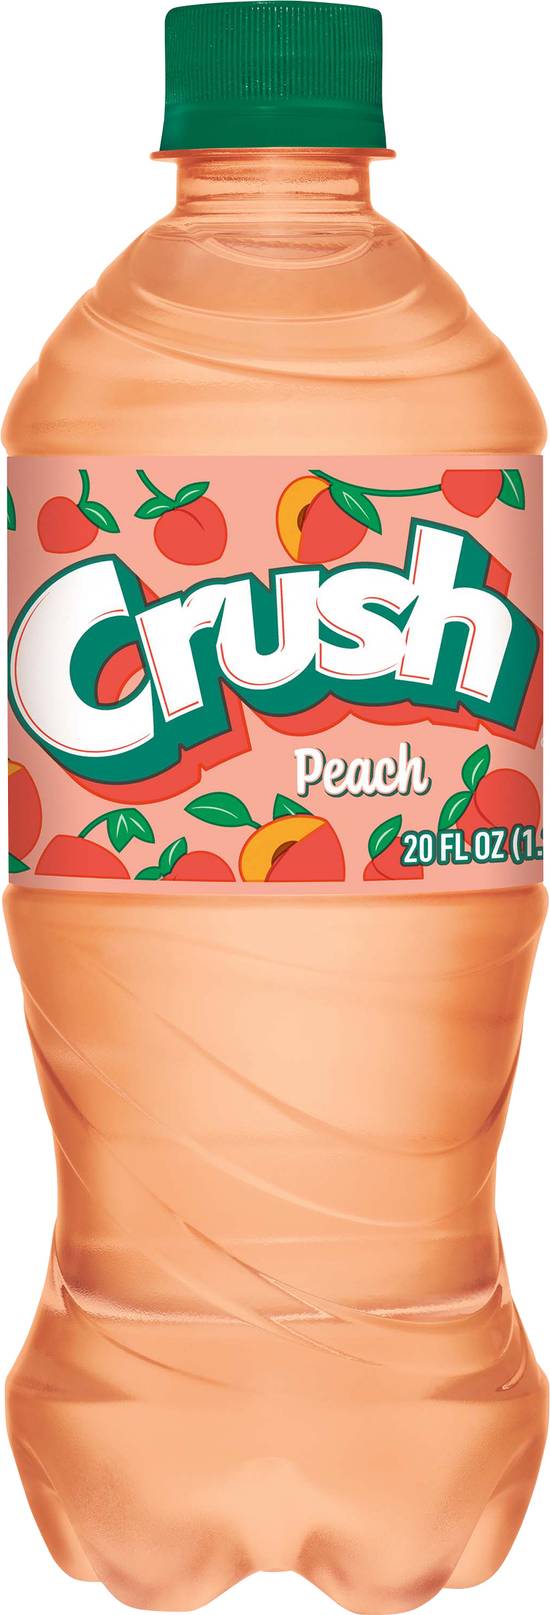 Crush Peach Soda (20 fl oz)